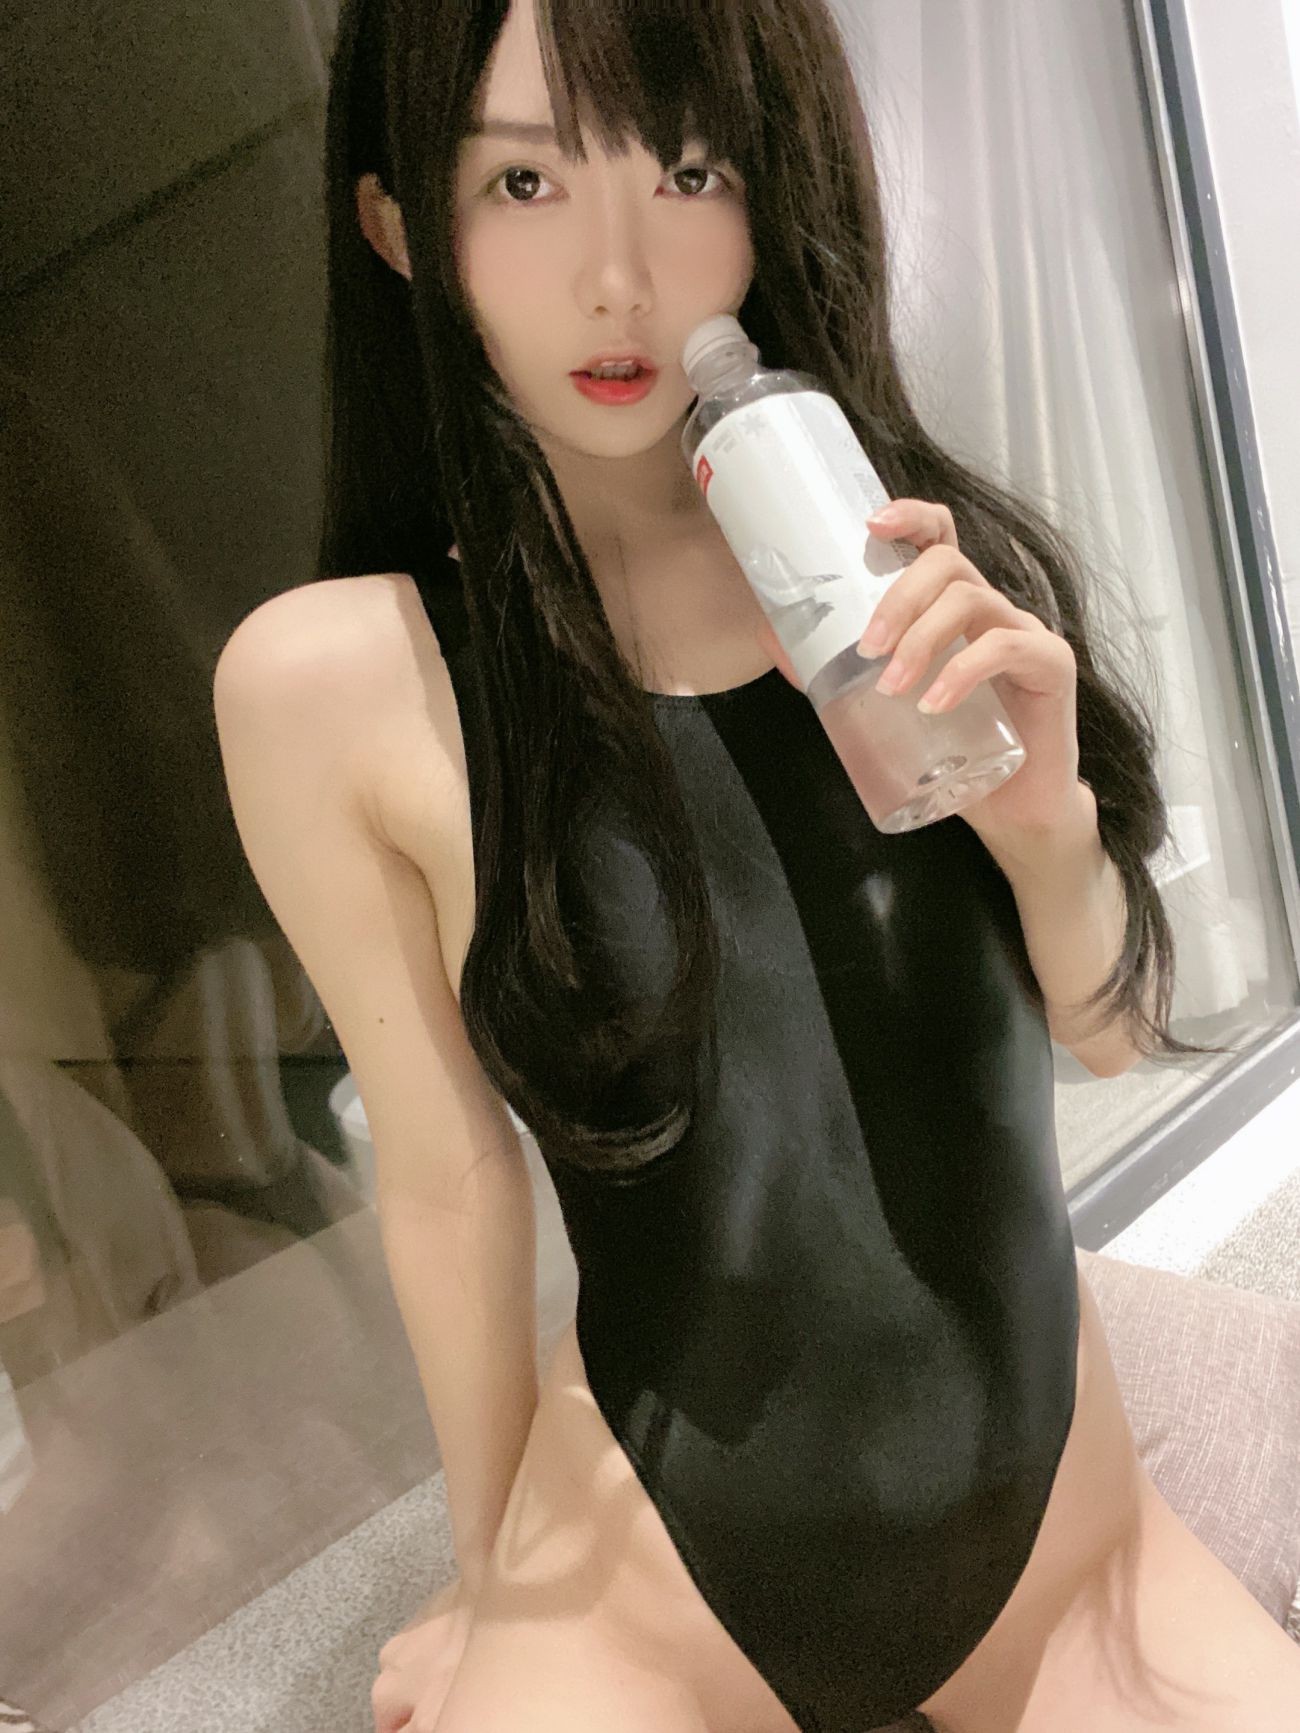 微博美少女51酱性感写真黑红泳装 (40)